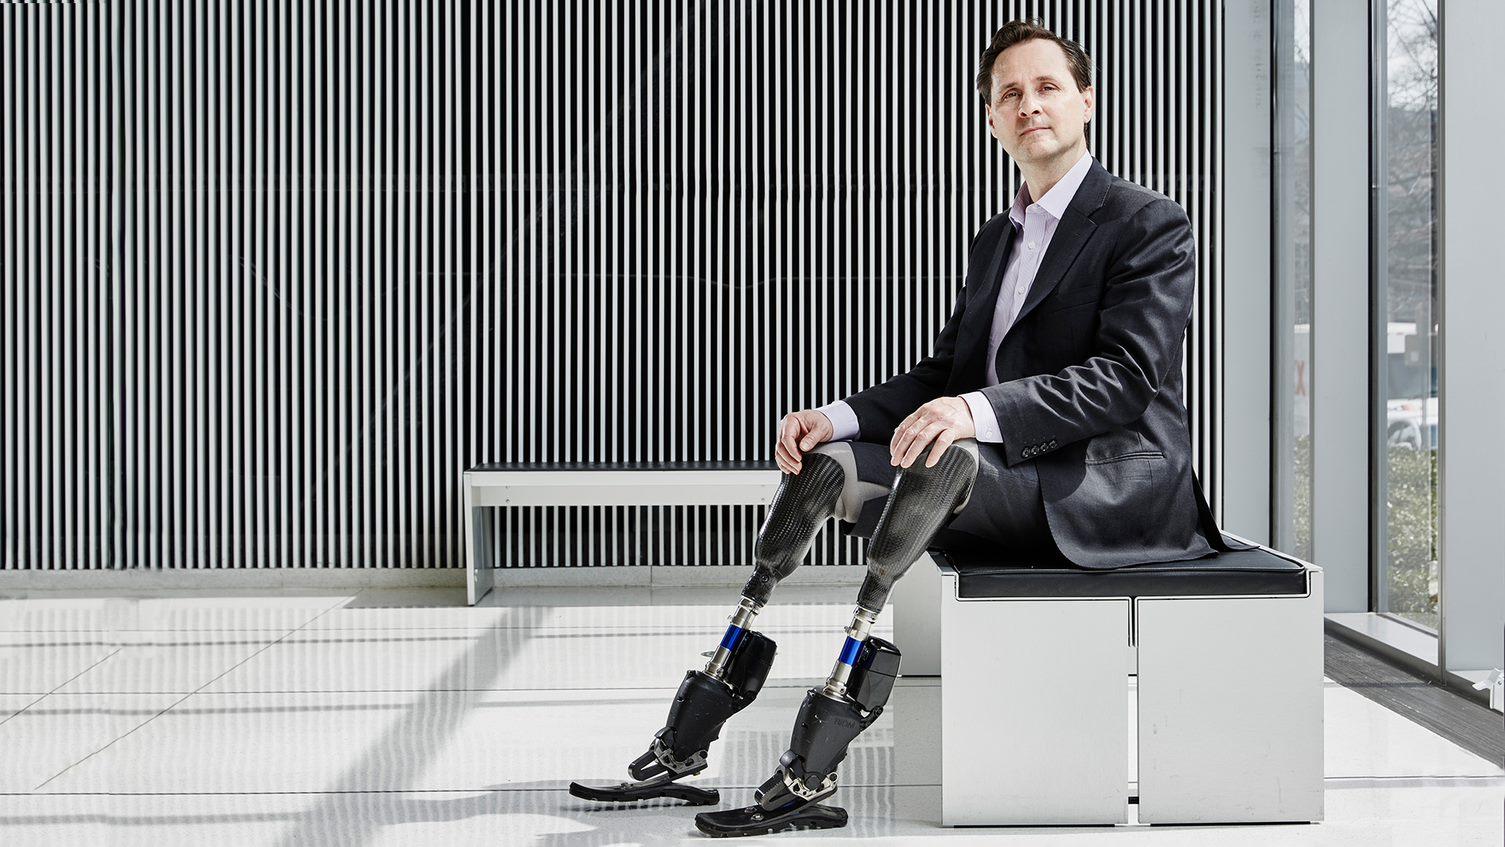 Inventeur avec des jambes bioméchatroniques, assis 